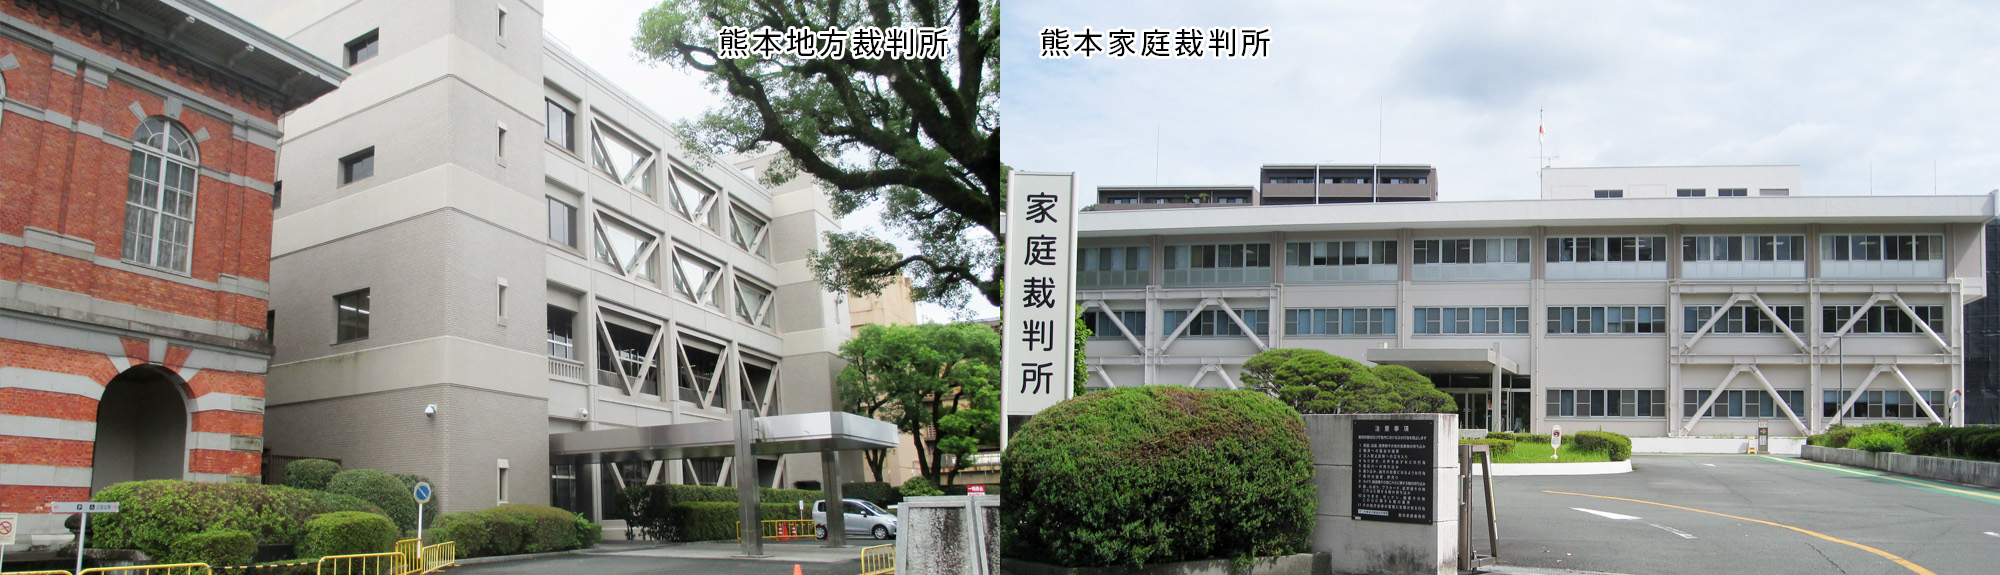 写真：熊本家庭裁判所、熊本地方裁判所外観